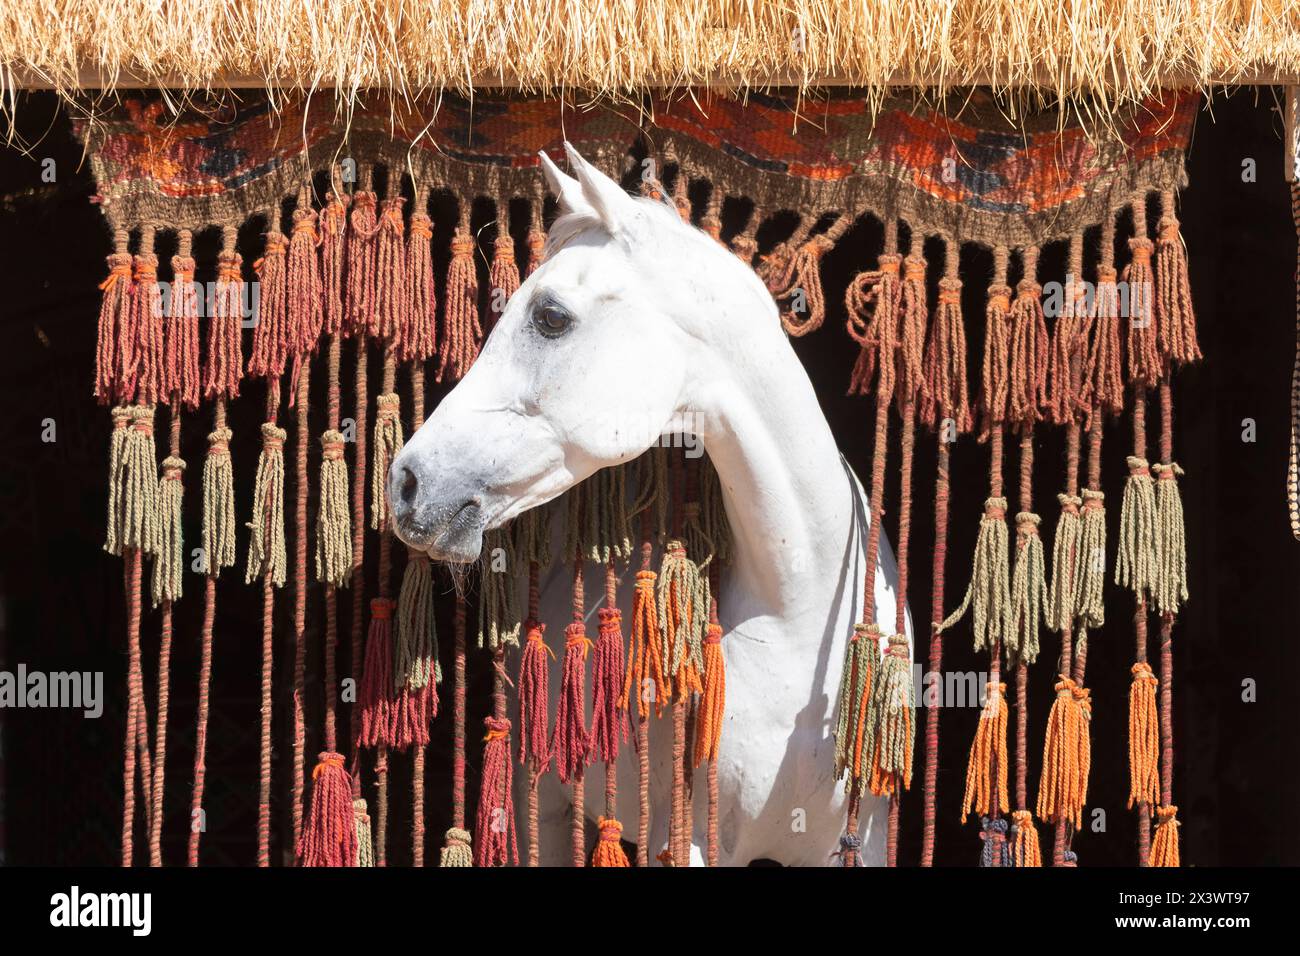 Arabisches Pferd. Der graue Hengst Amun schaut durch einen Vorhang aus Seilen und Quasten. Ägypten Stockfoto